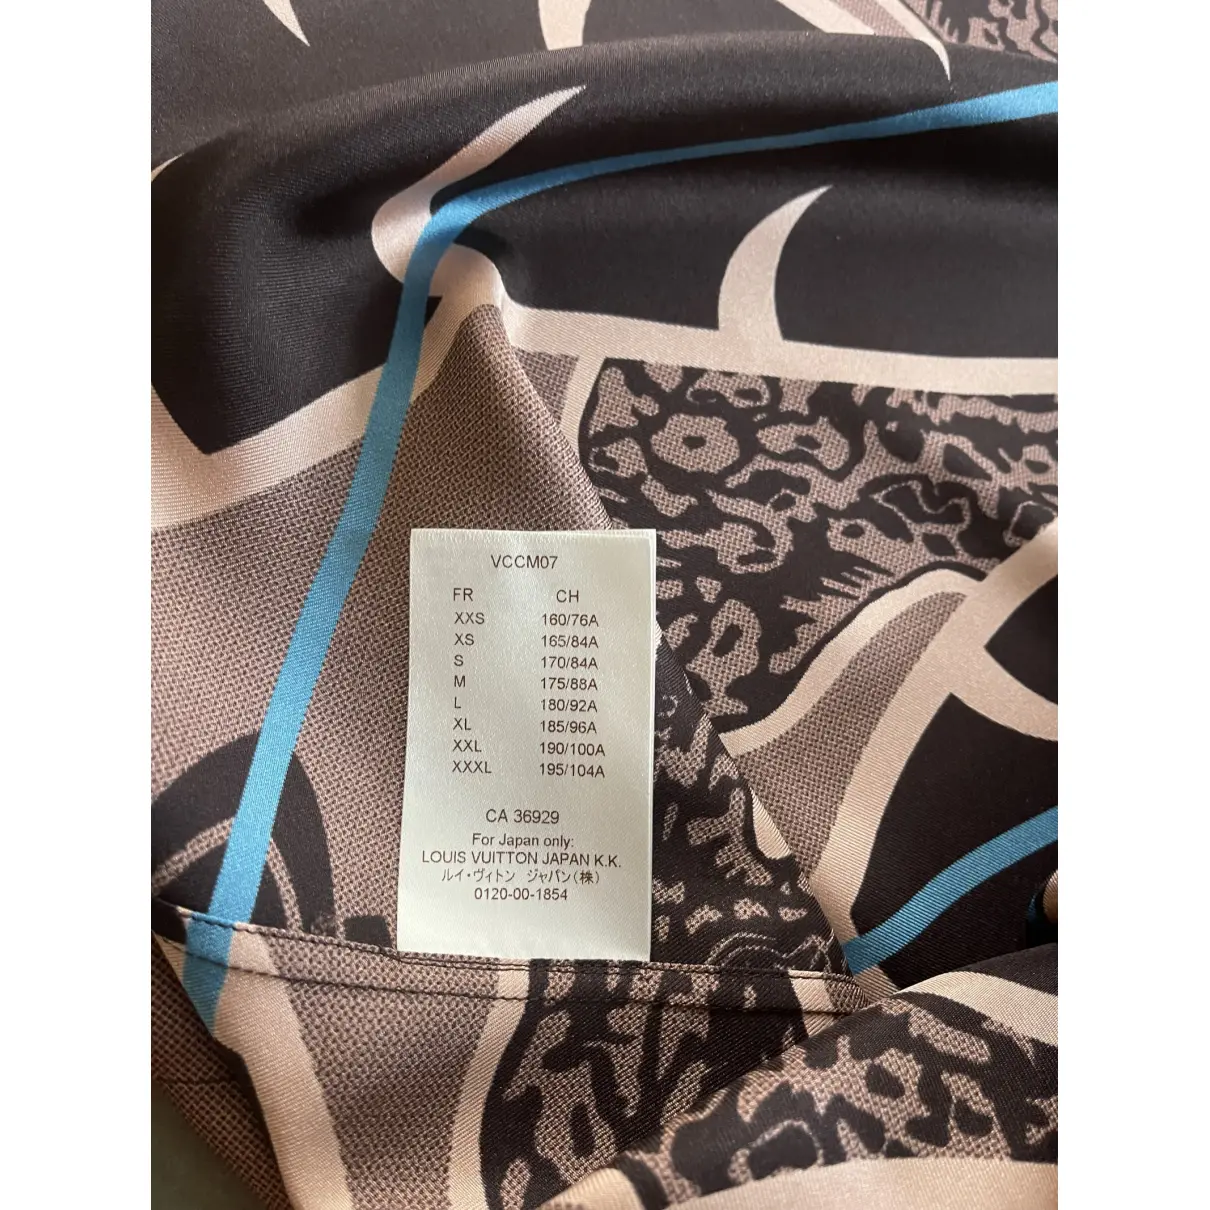 Silk shirt Louis Vuitton